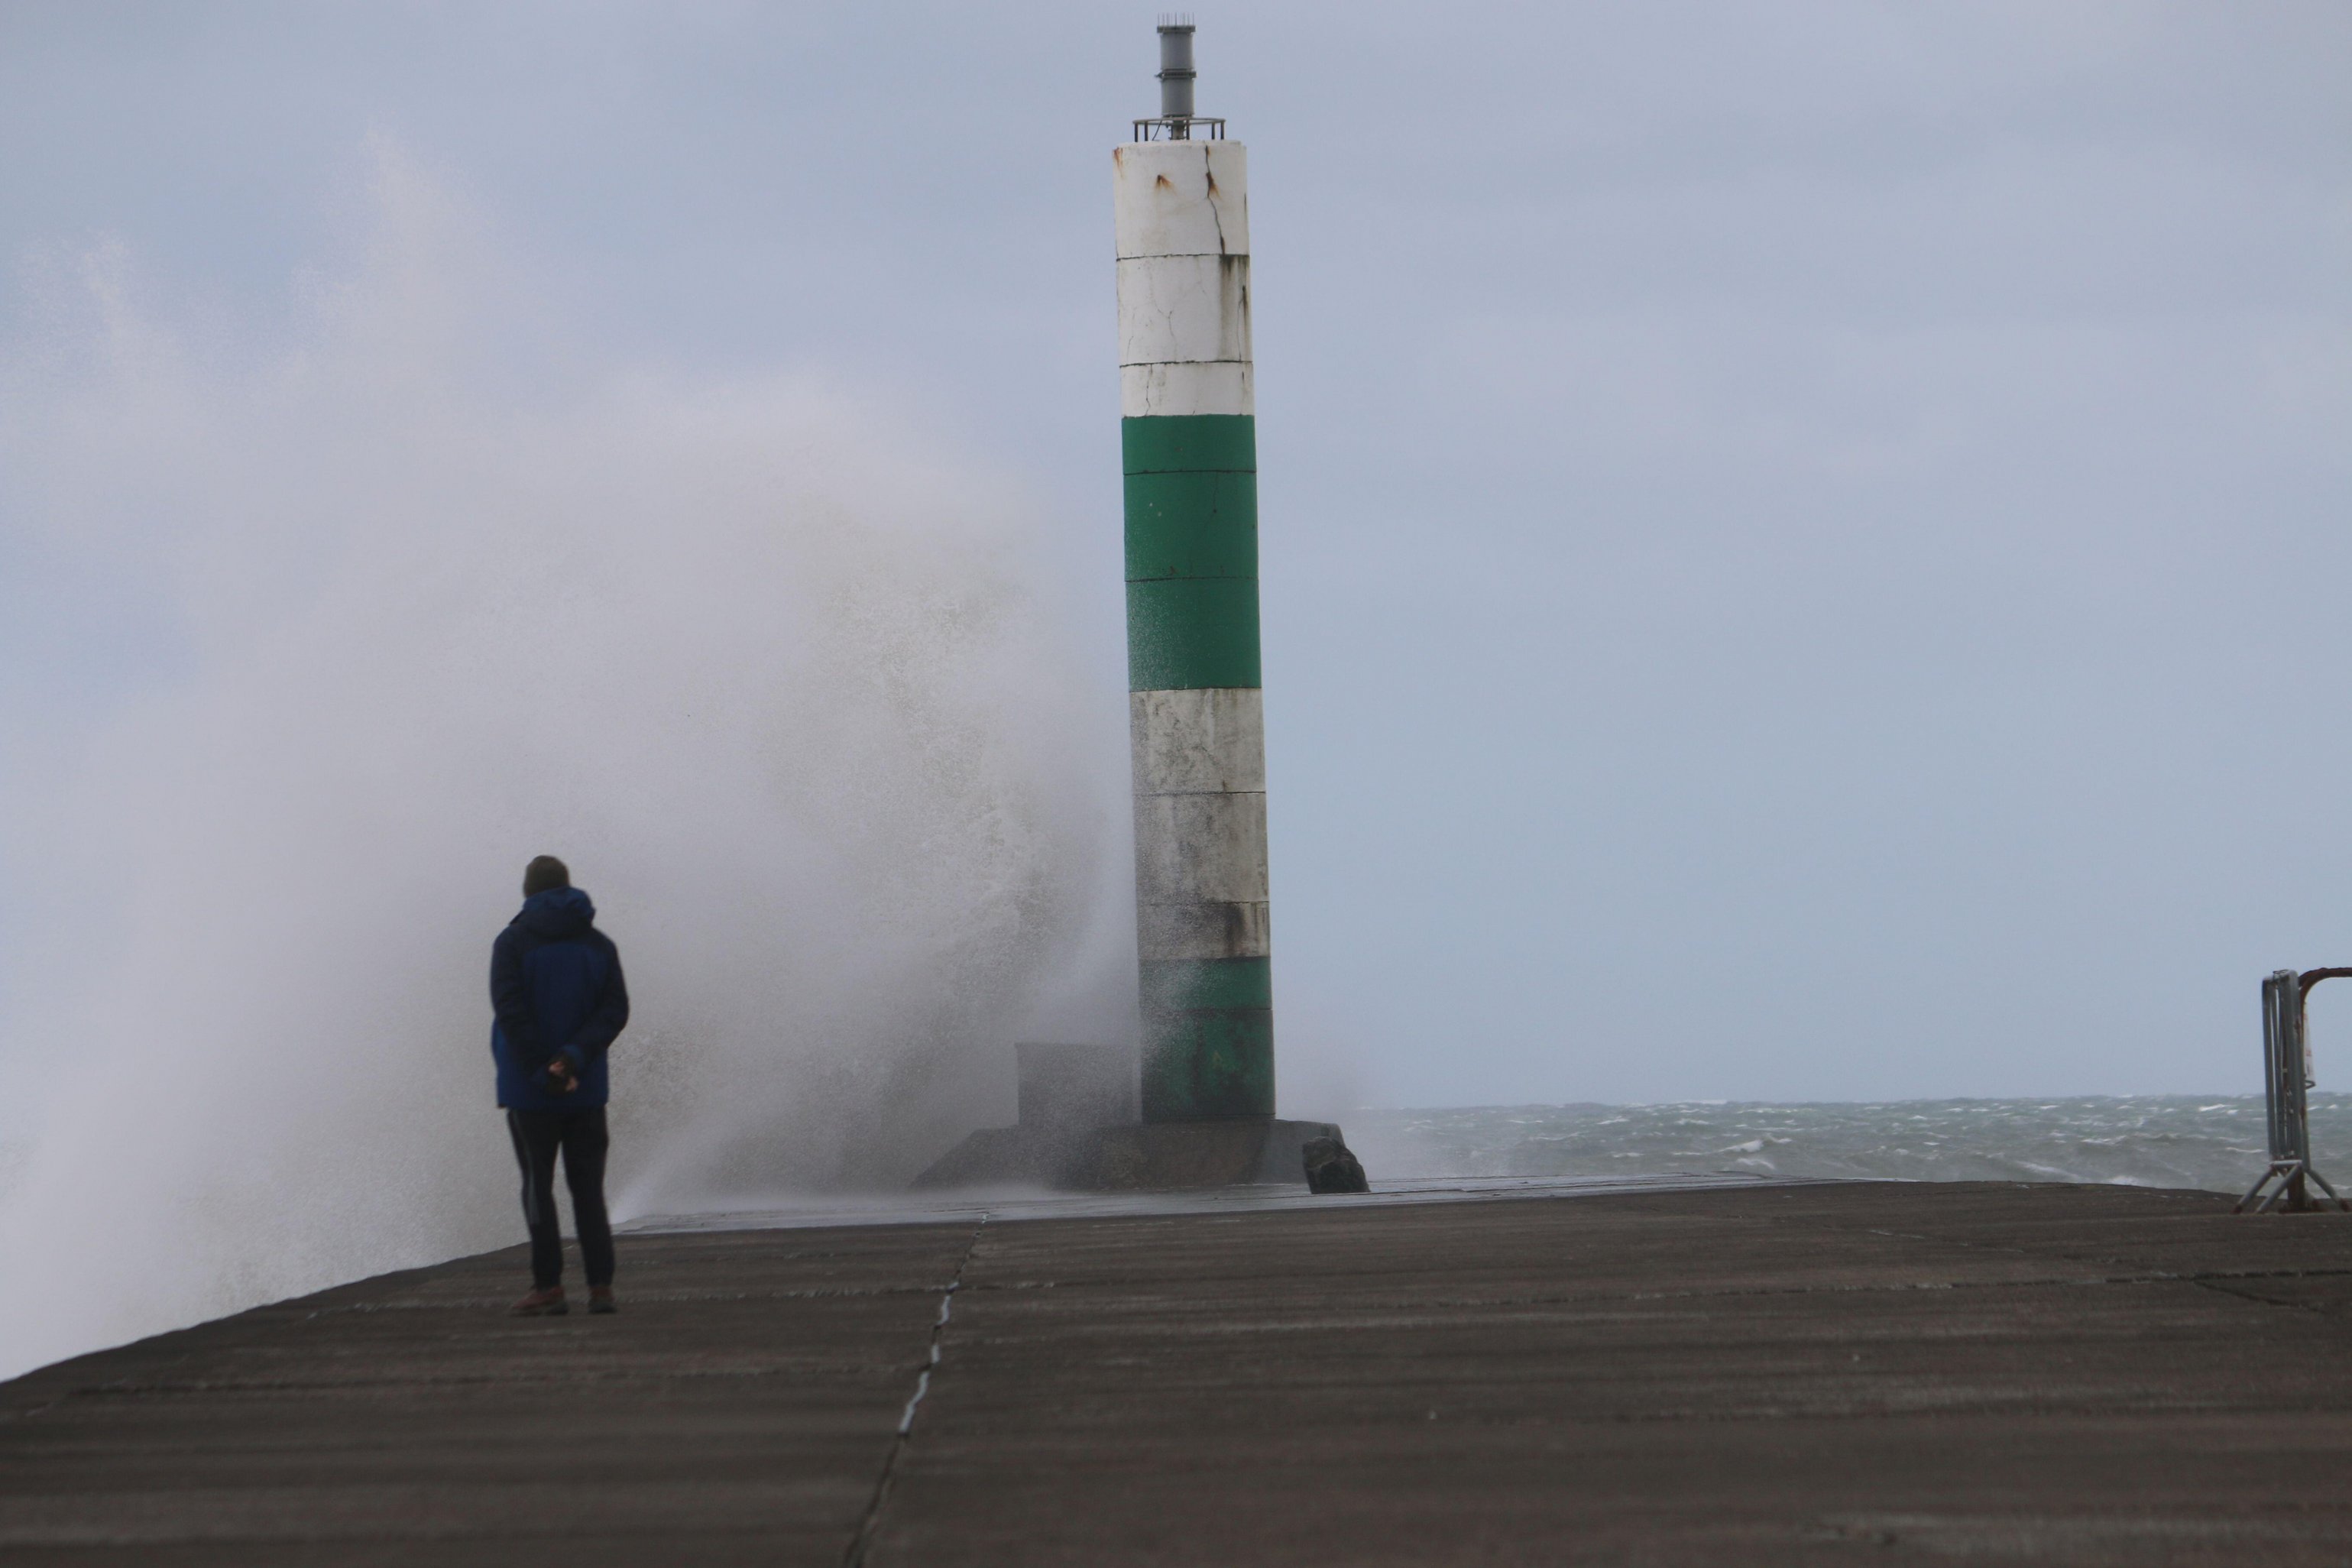 Letzte Woche schlugen riesige Wellen gegen den Hafen von Aberystwyth